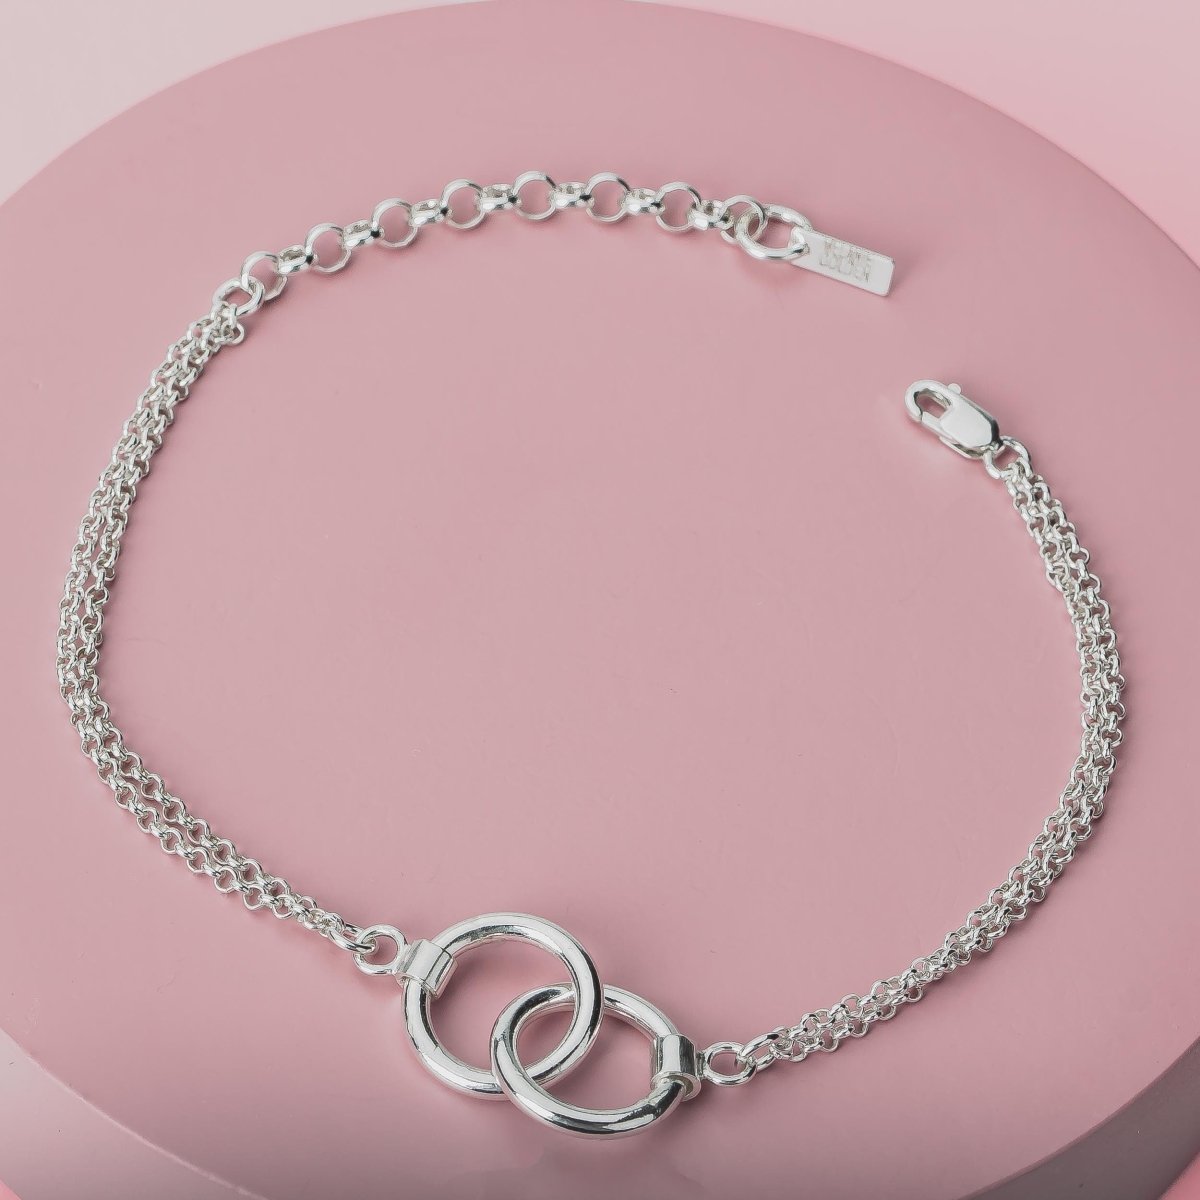 Forever Connected Bracelet - Melanie Golden Jewelry - _badge_new, bracelet, chain bracelet, forever connected, new